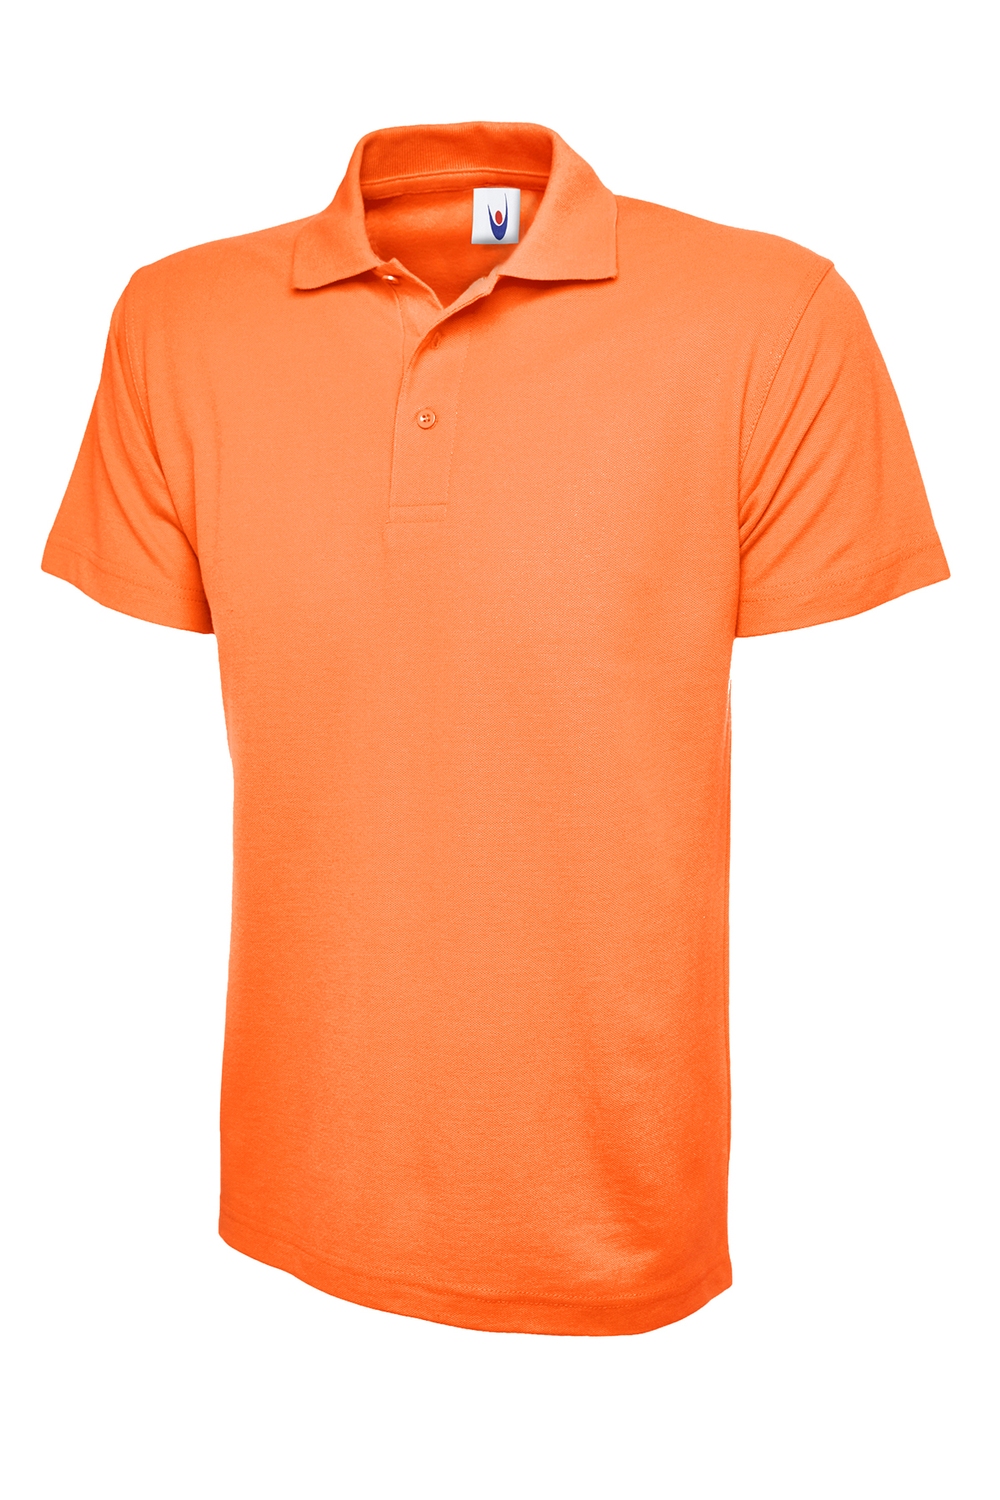 Orangepoloshirt